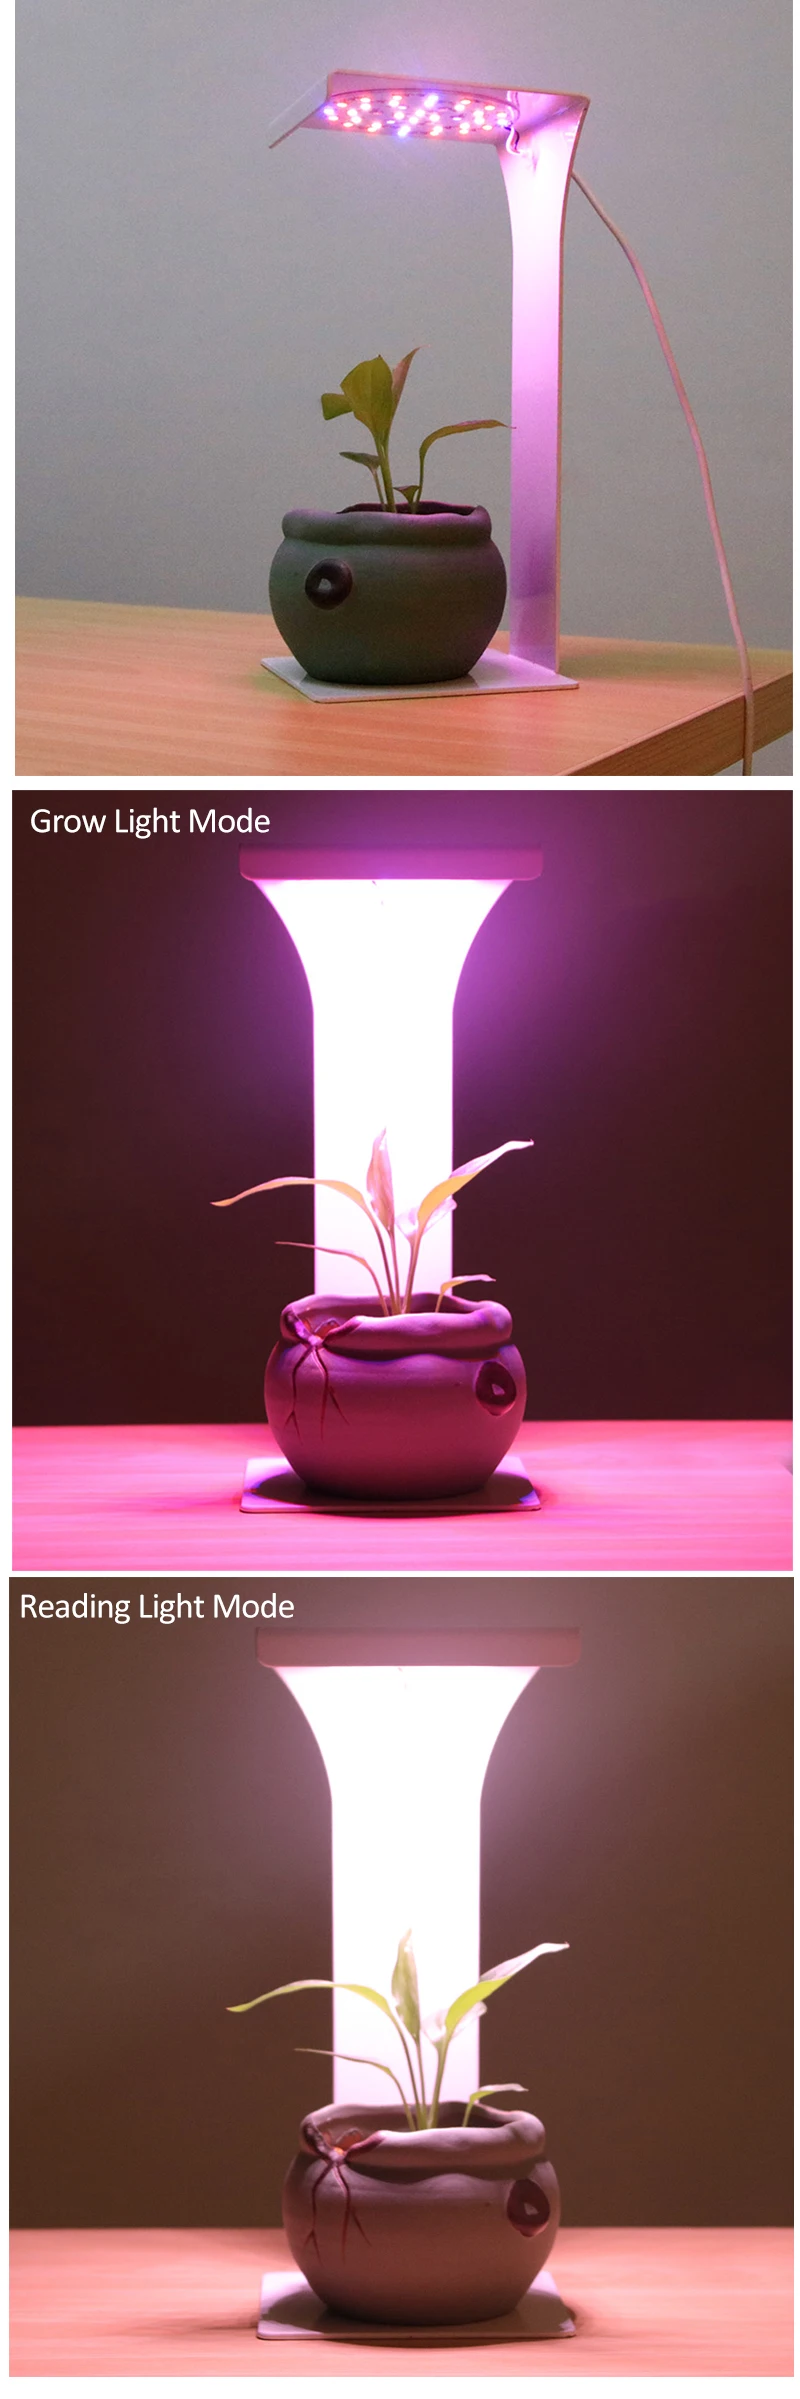 Таймер USB полный спектр светодиодный свет для выращивания растений лампа для чтения в помещении ИК VU Фито Авто Вкл/Выкл настольные лампы